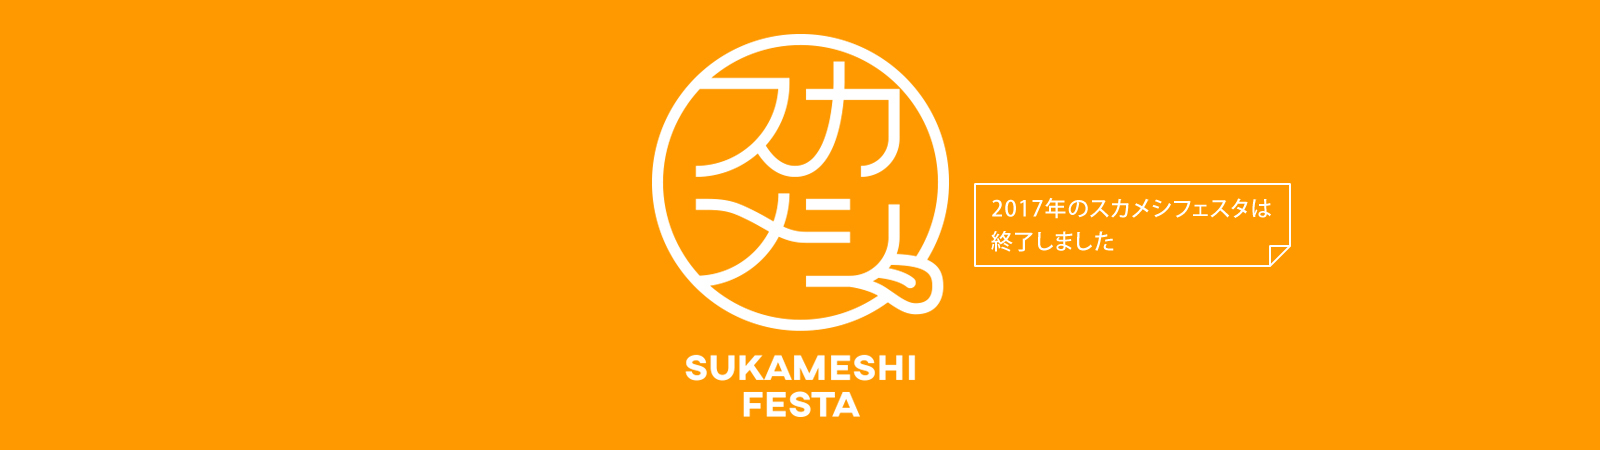 横須賀「スカメシオフィシャルサイト」2017年のスカメシフェスタは終了しました。